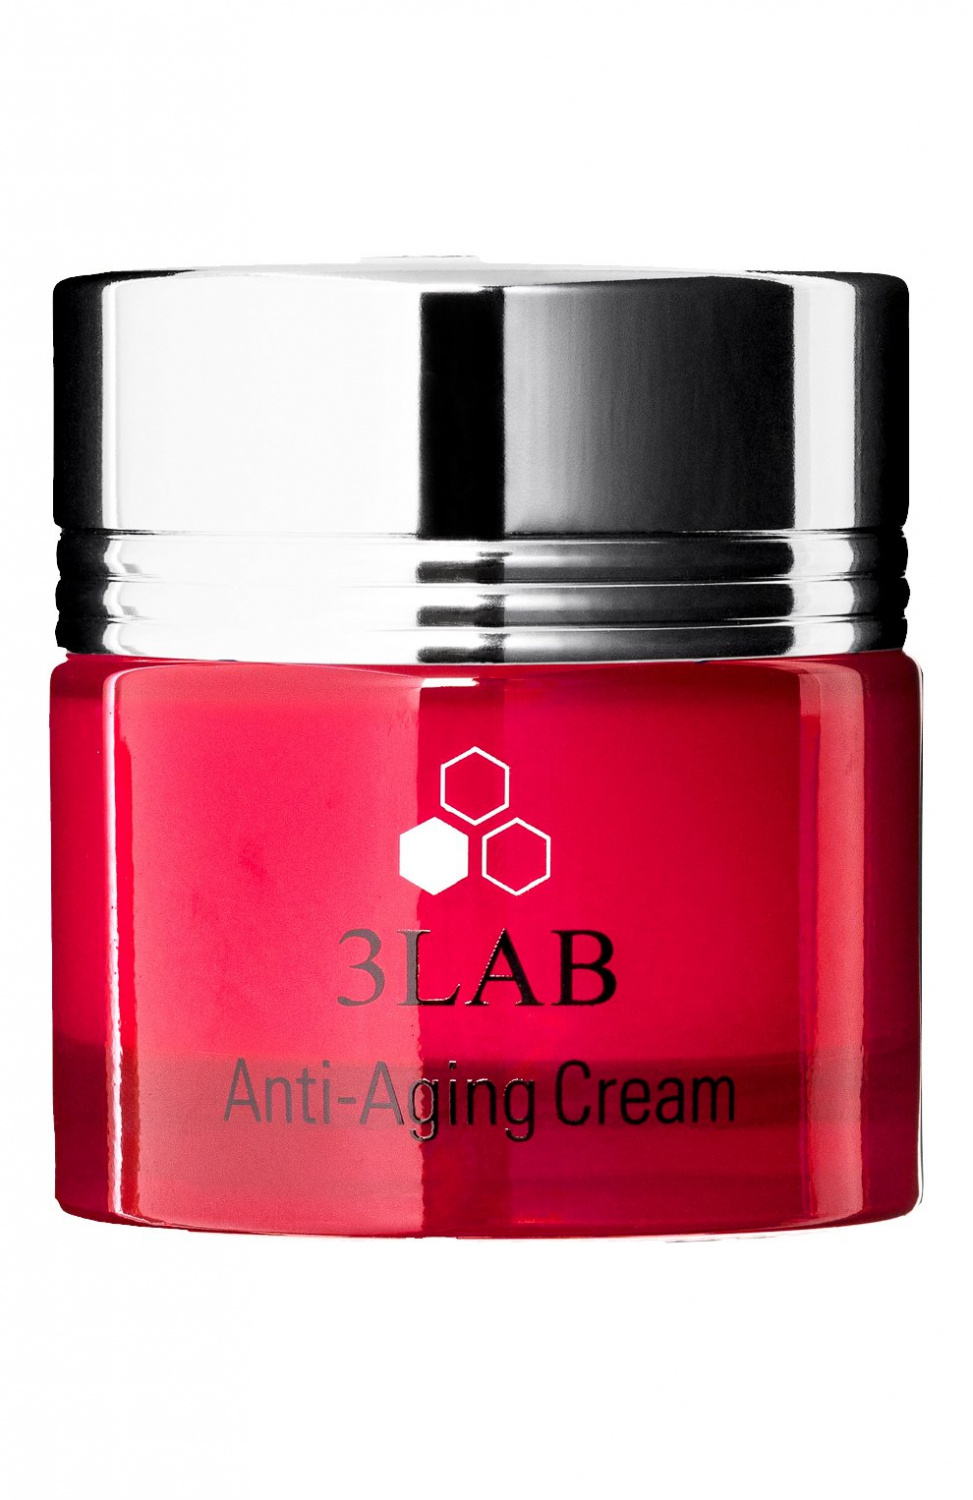 3LAB Anti-Aging Cream 60ml - интернет-магазин профессиональной косметики Spadream, изображение 37302